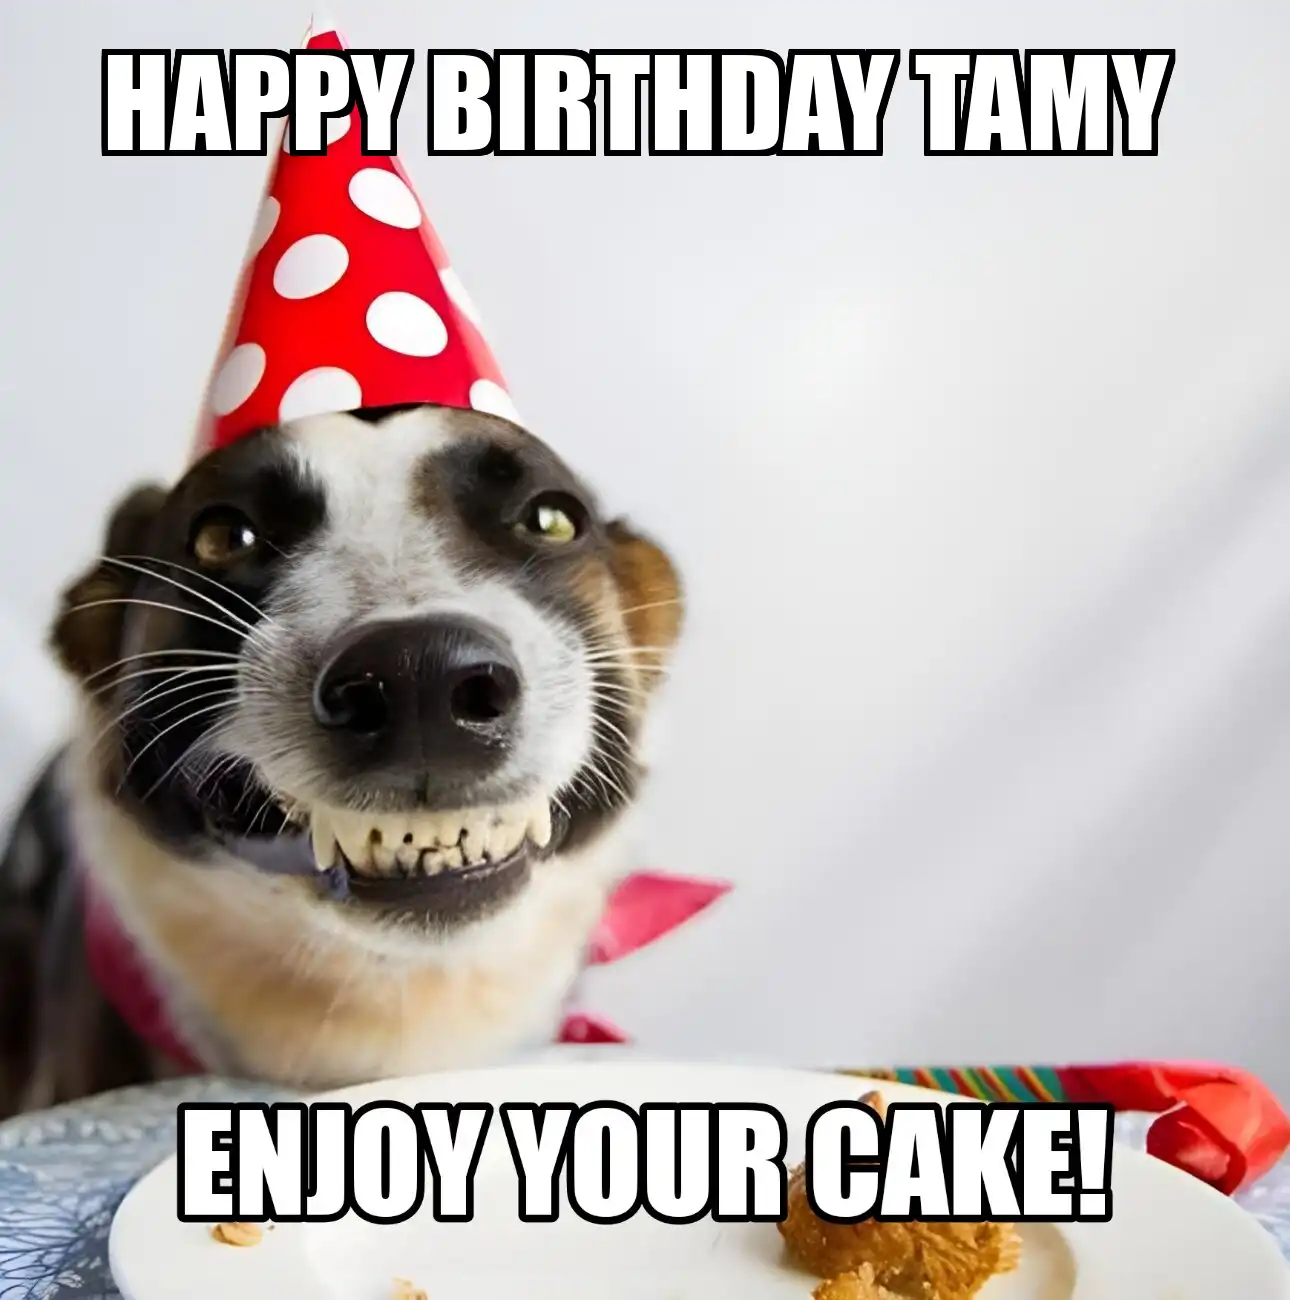 Happy Birthday Tamy Enjoy Your Cake Dog Meme